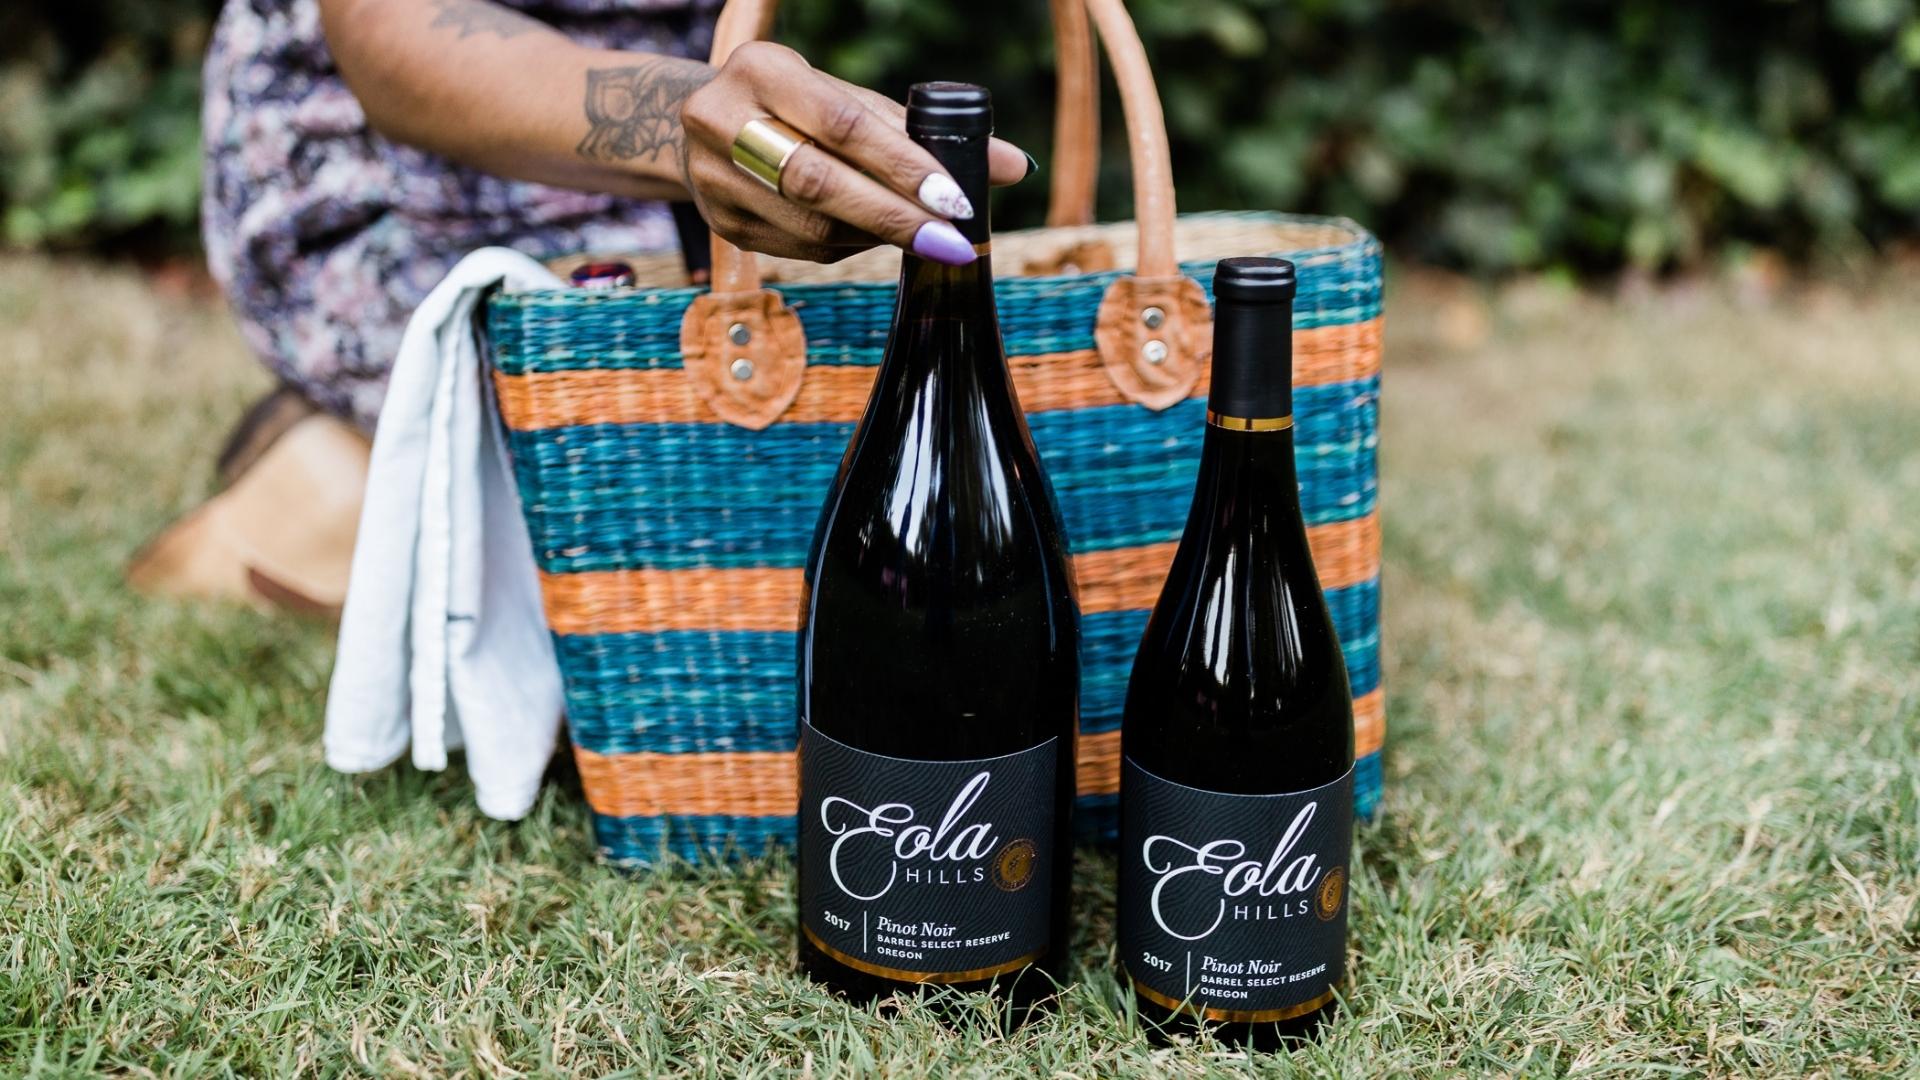 Two bottles of Eola Hills pinot noir